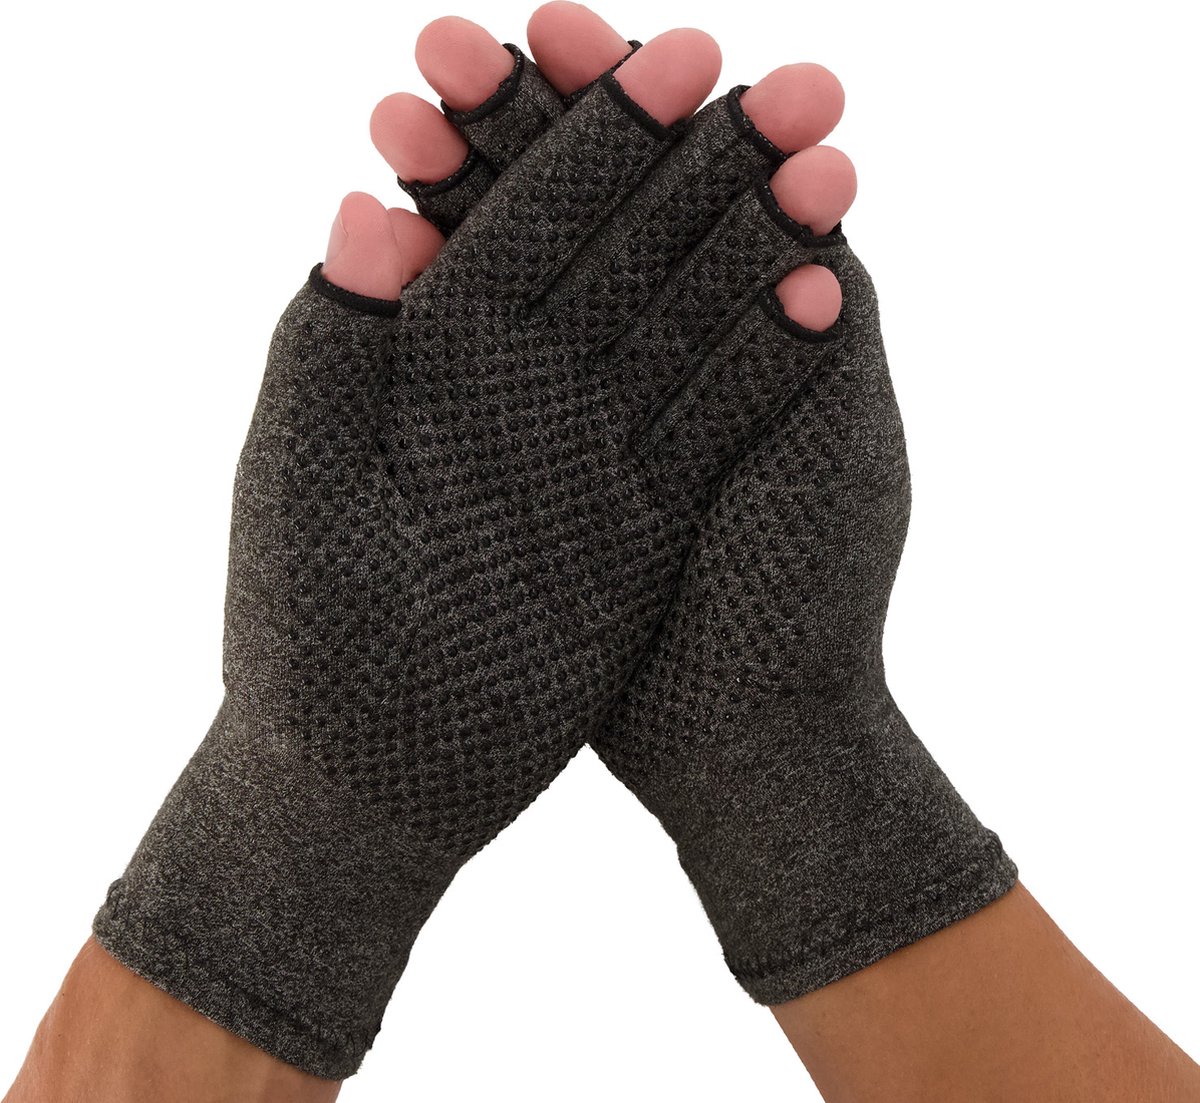 Medidu Artrose Handschoenen - Reuma Handschoenen met Antisliplaag - Artitis Handschoenen met Open Vingertoppen - Per Paar - Grijs - XL